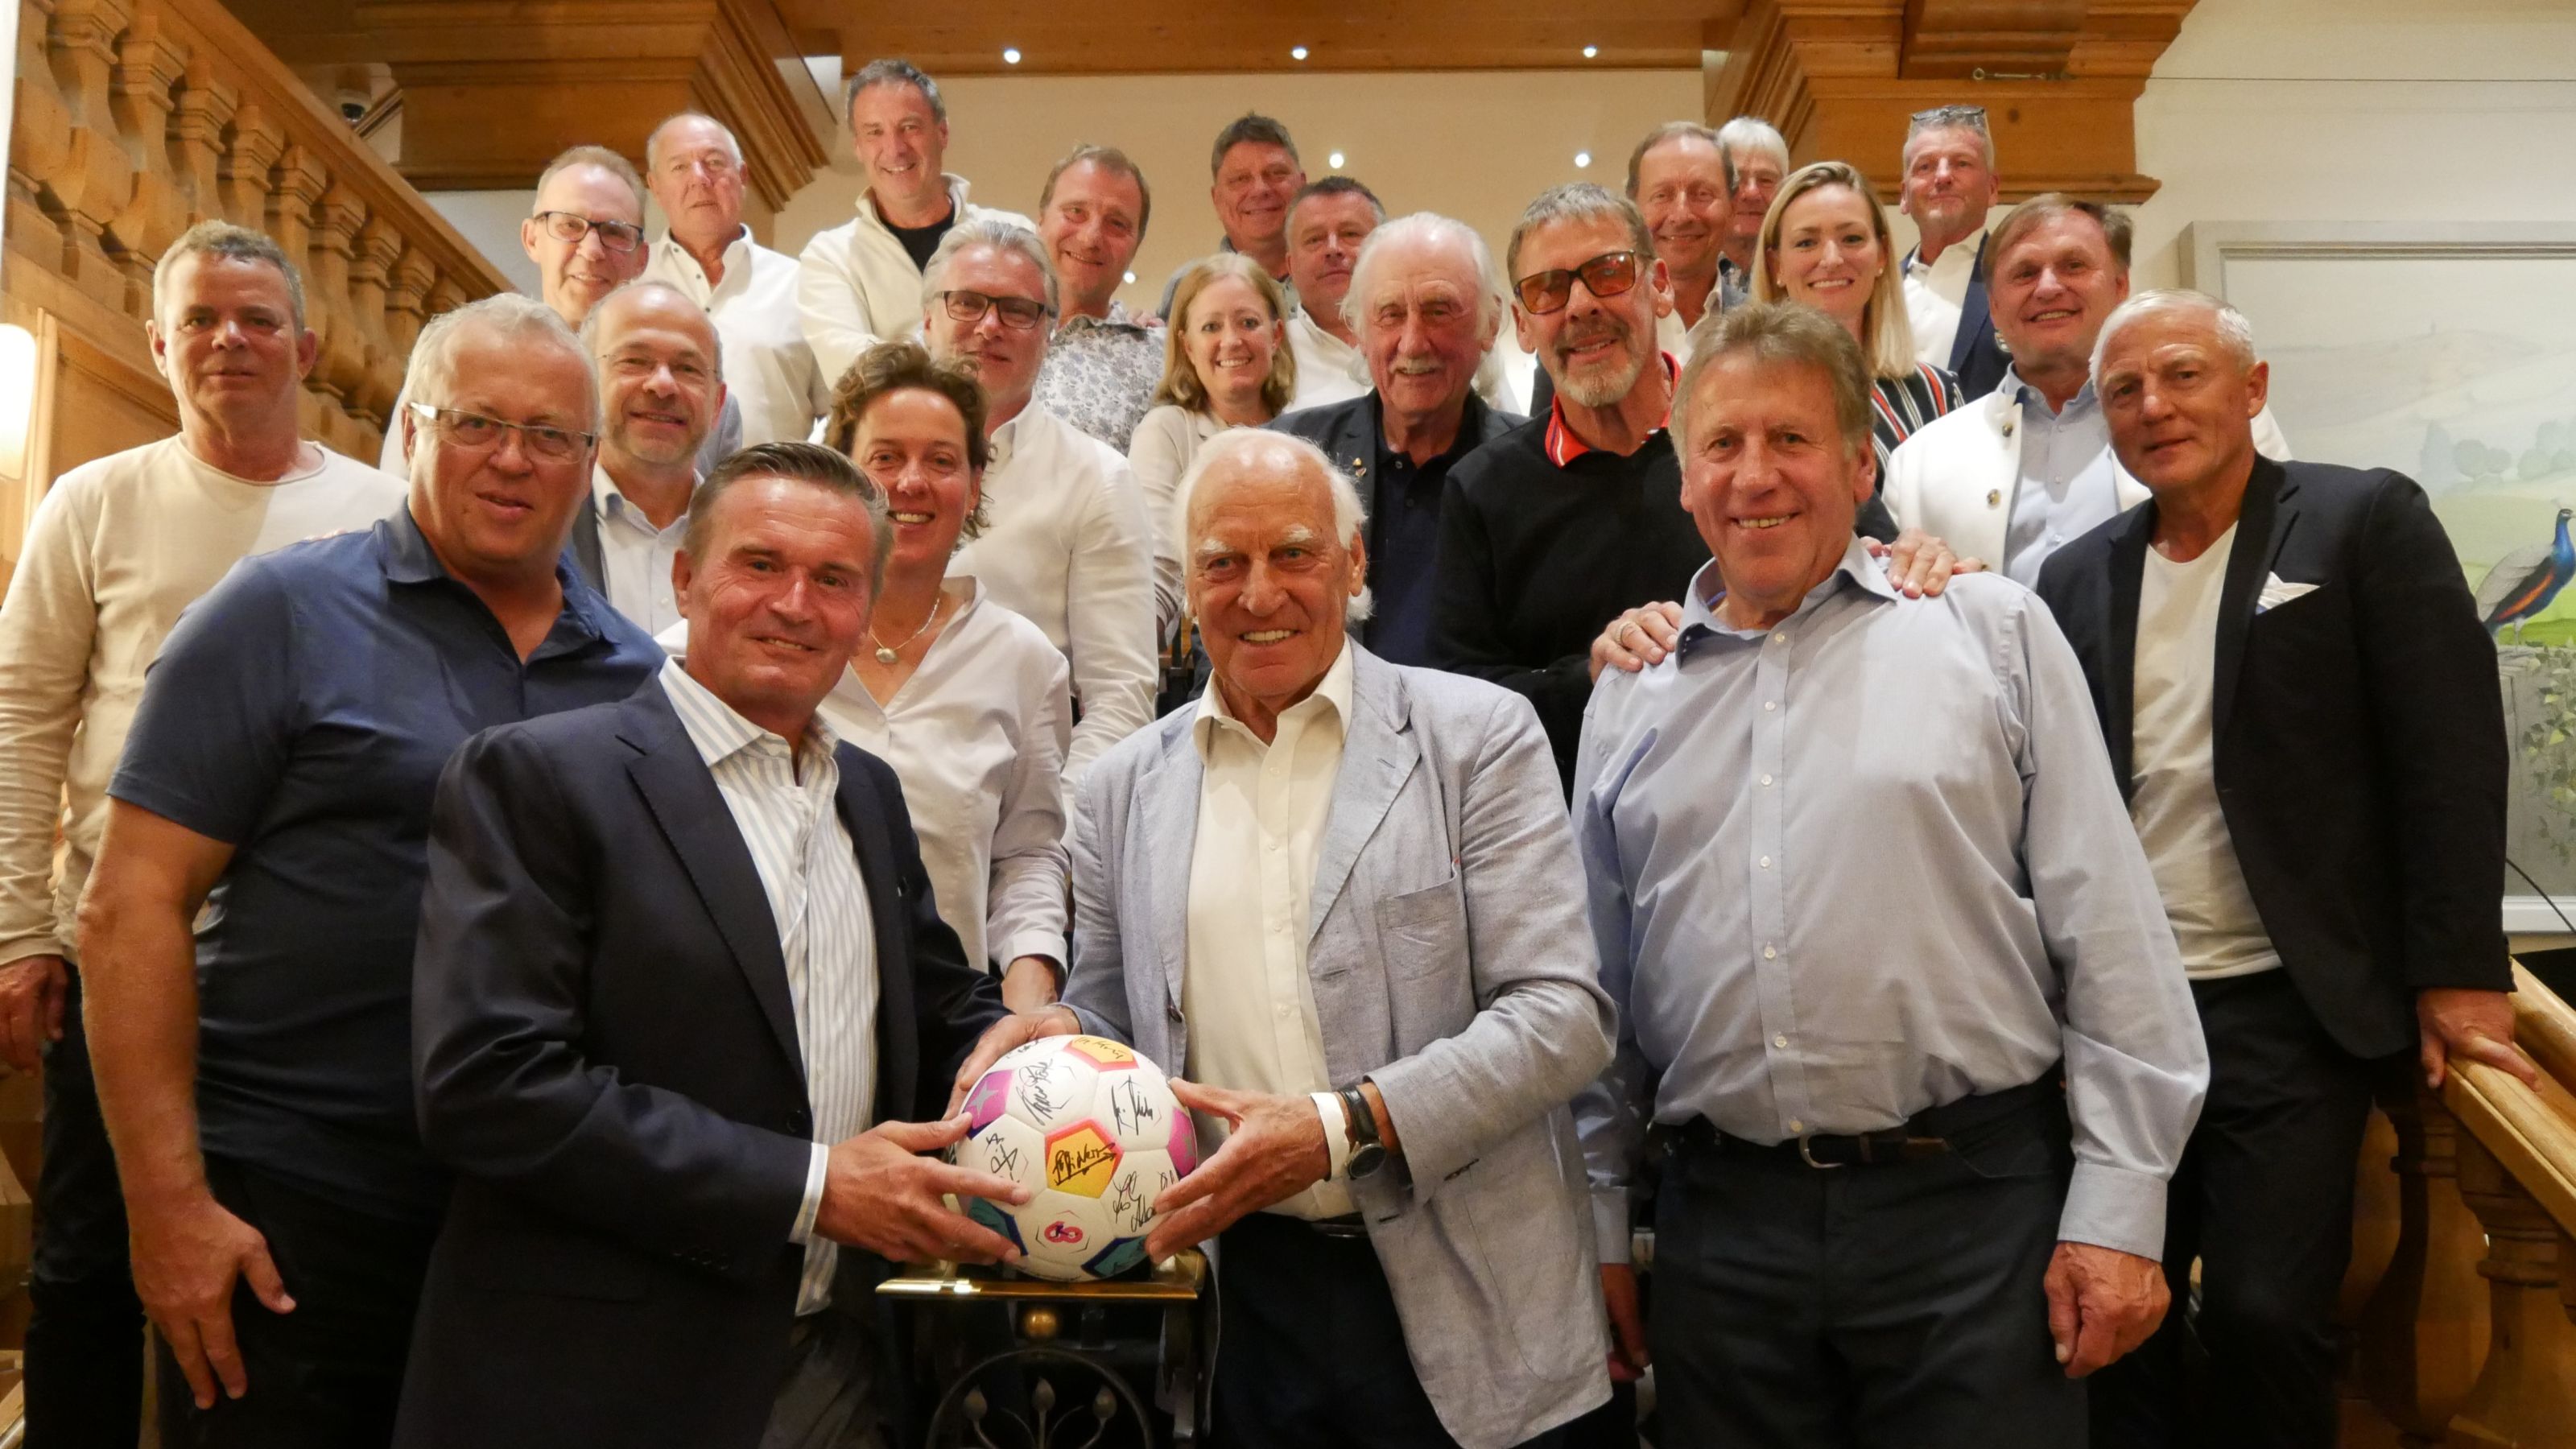 Die Teilnehmer des Bundesliga Cup 2023 in Bad Griesbach unterschrieben allesamt auf einem Fußball, der hinterher versteigert wurde. © Quellness & Golf Resort Bad Griesbach